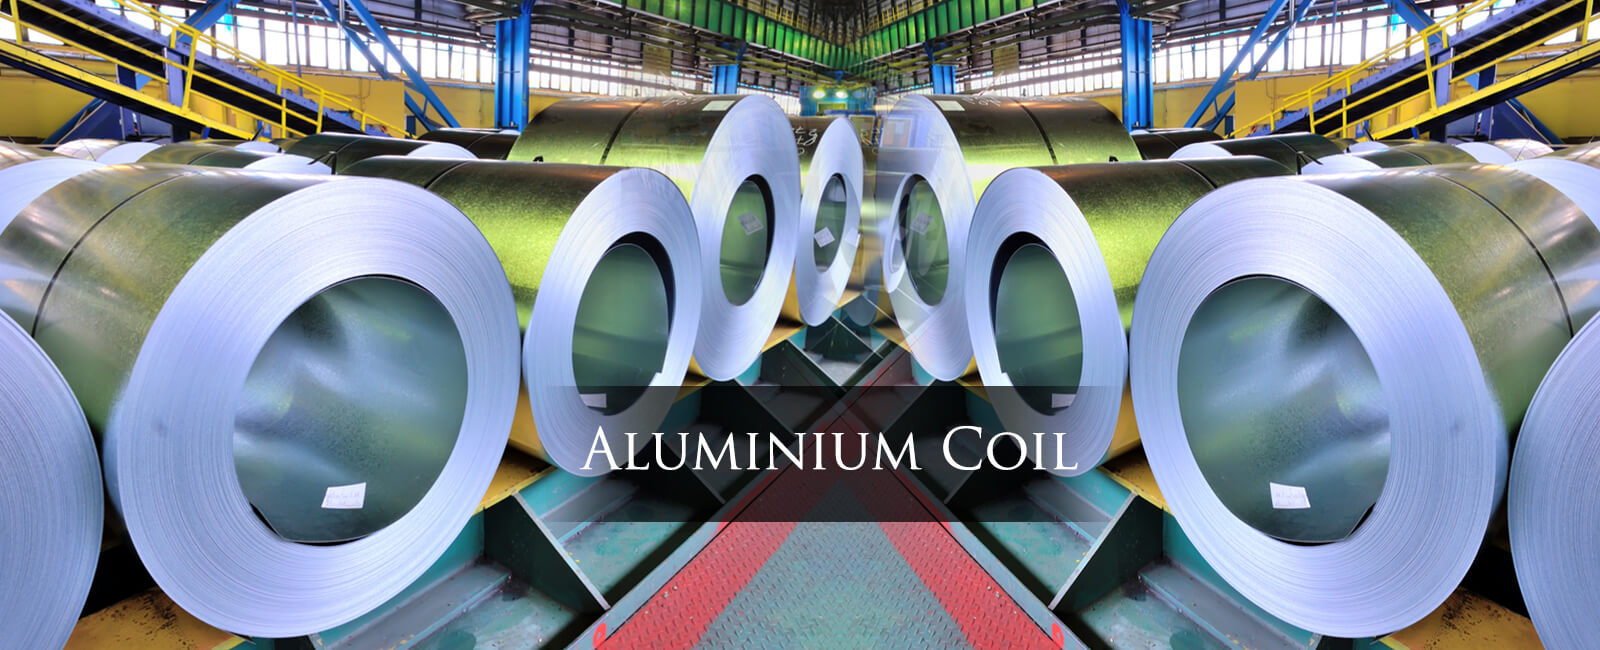 Aluminium Coil Suppliers in Delhi